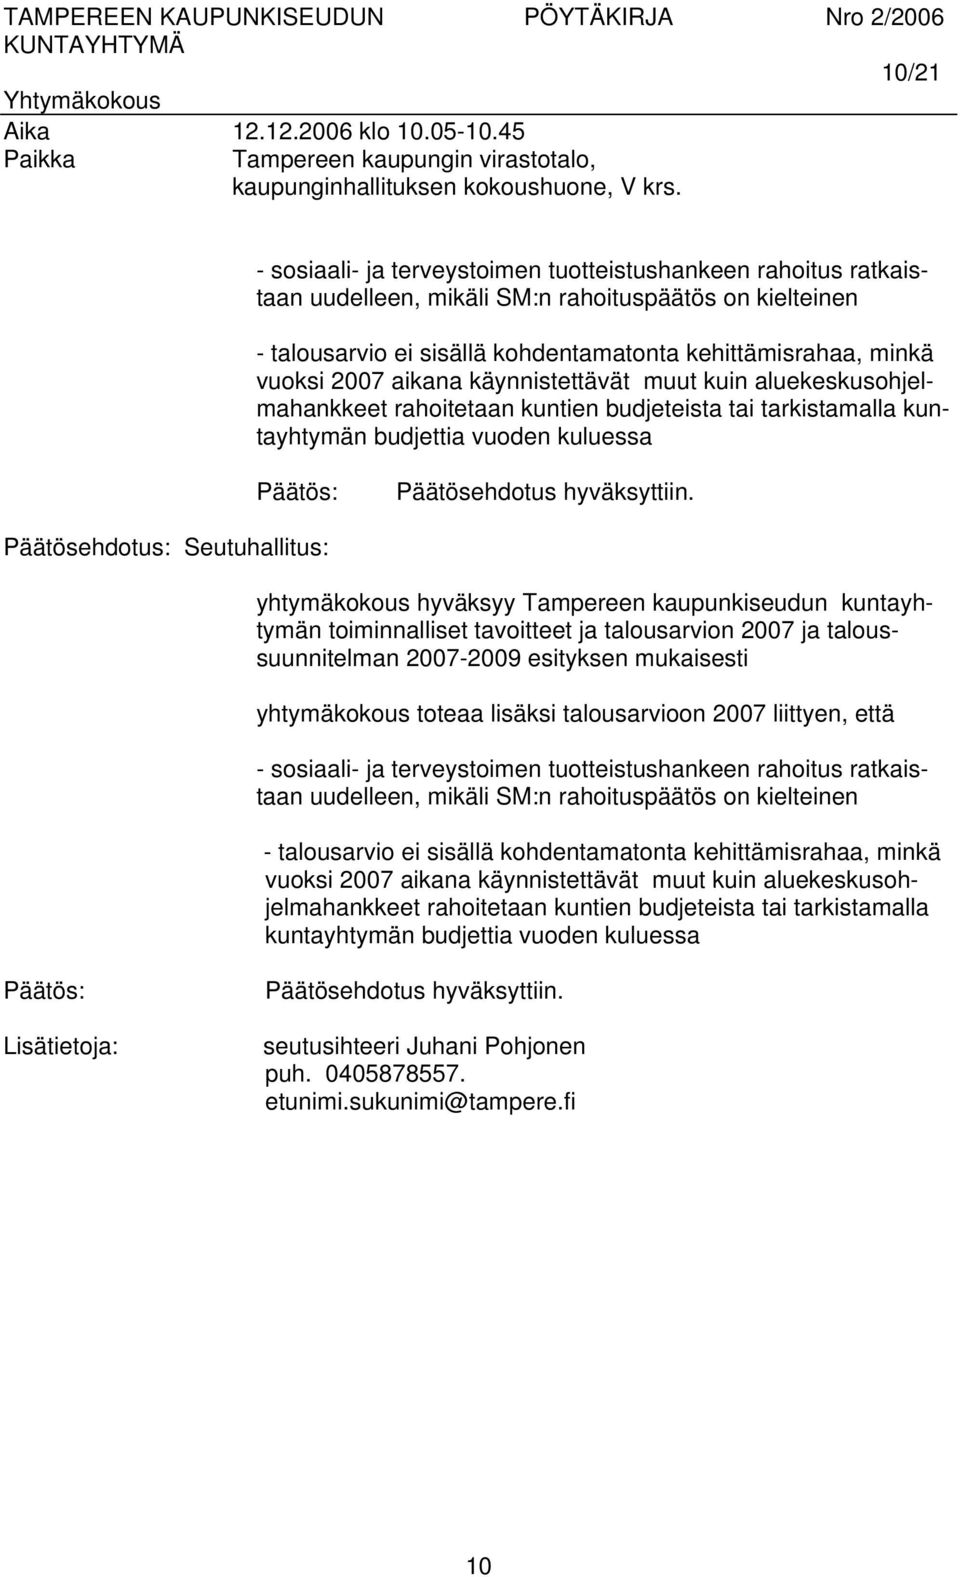 Päätösehdotus: Seutuhallitus: yhtymäkokous hyväksyy Tampereen kaupunkiseudun kuntayhtymän toiminnalliset tavoitteet ja talousarvion 2007 ja taloussuunnitelman 2007-2009 esityksen mukaisesti